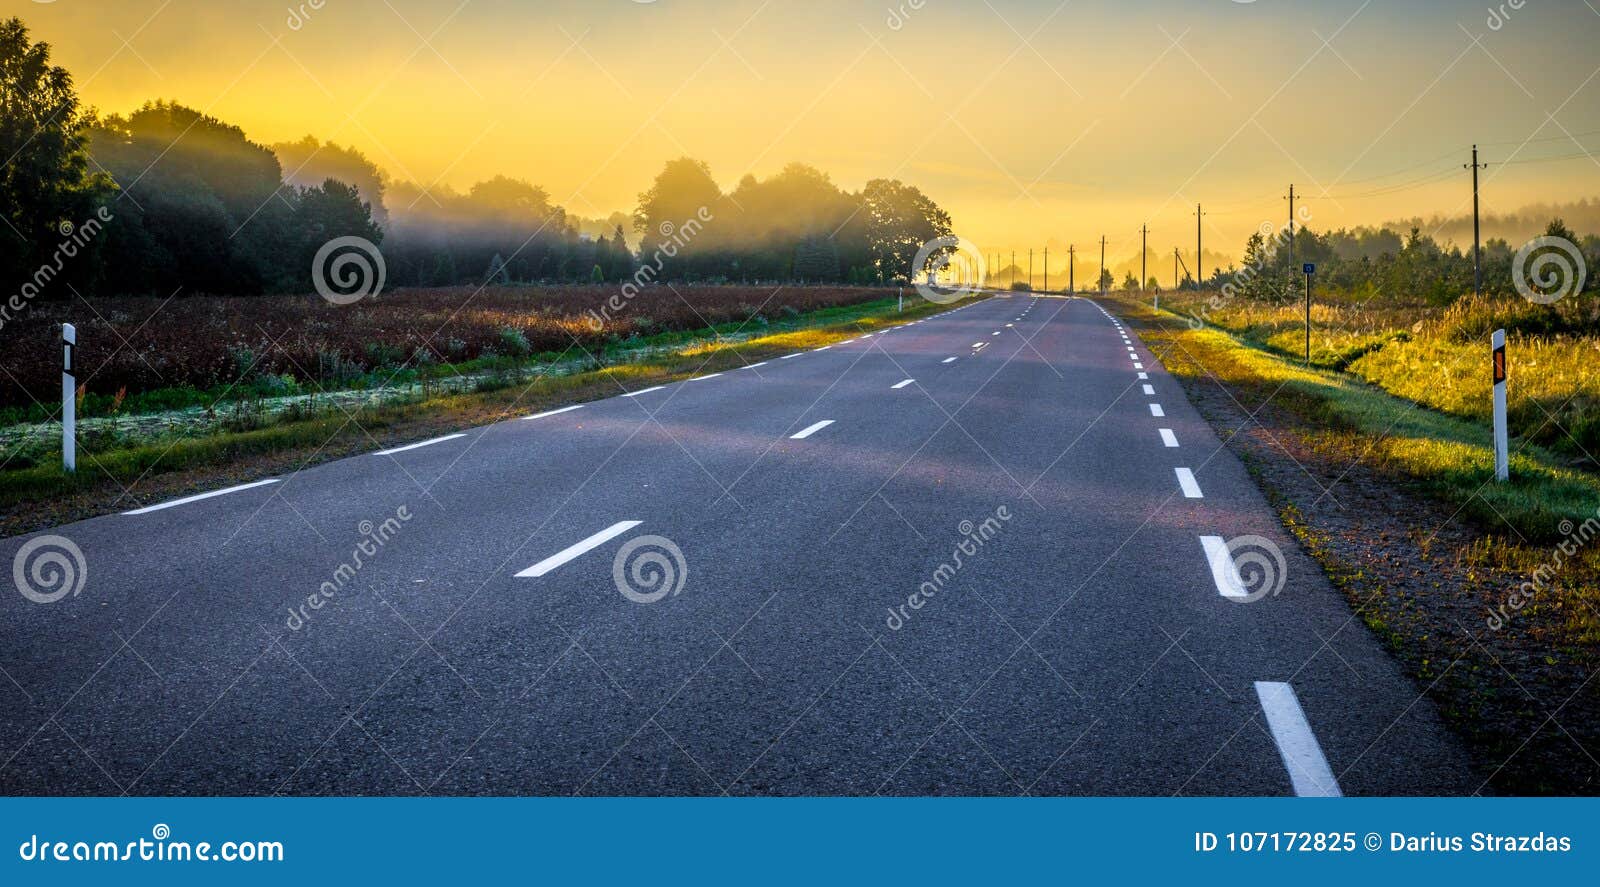 Asphalt road at sunrise stock image. Image of photography ...